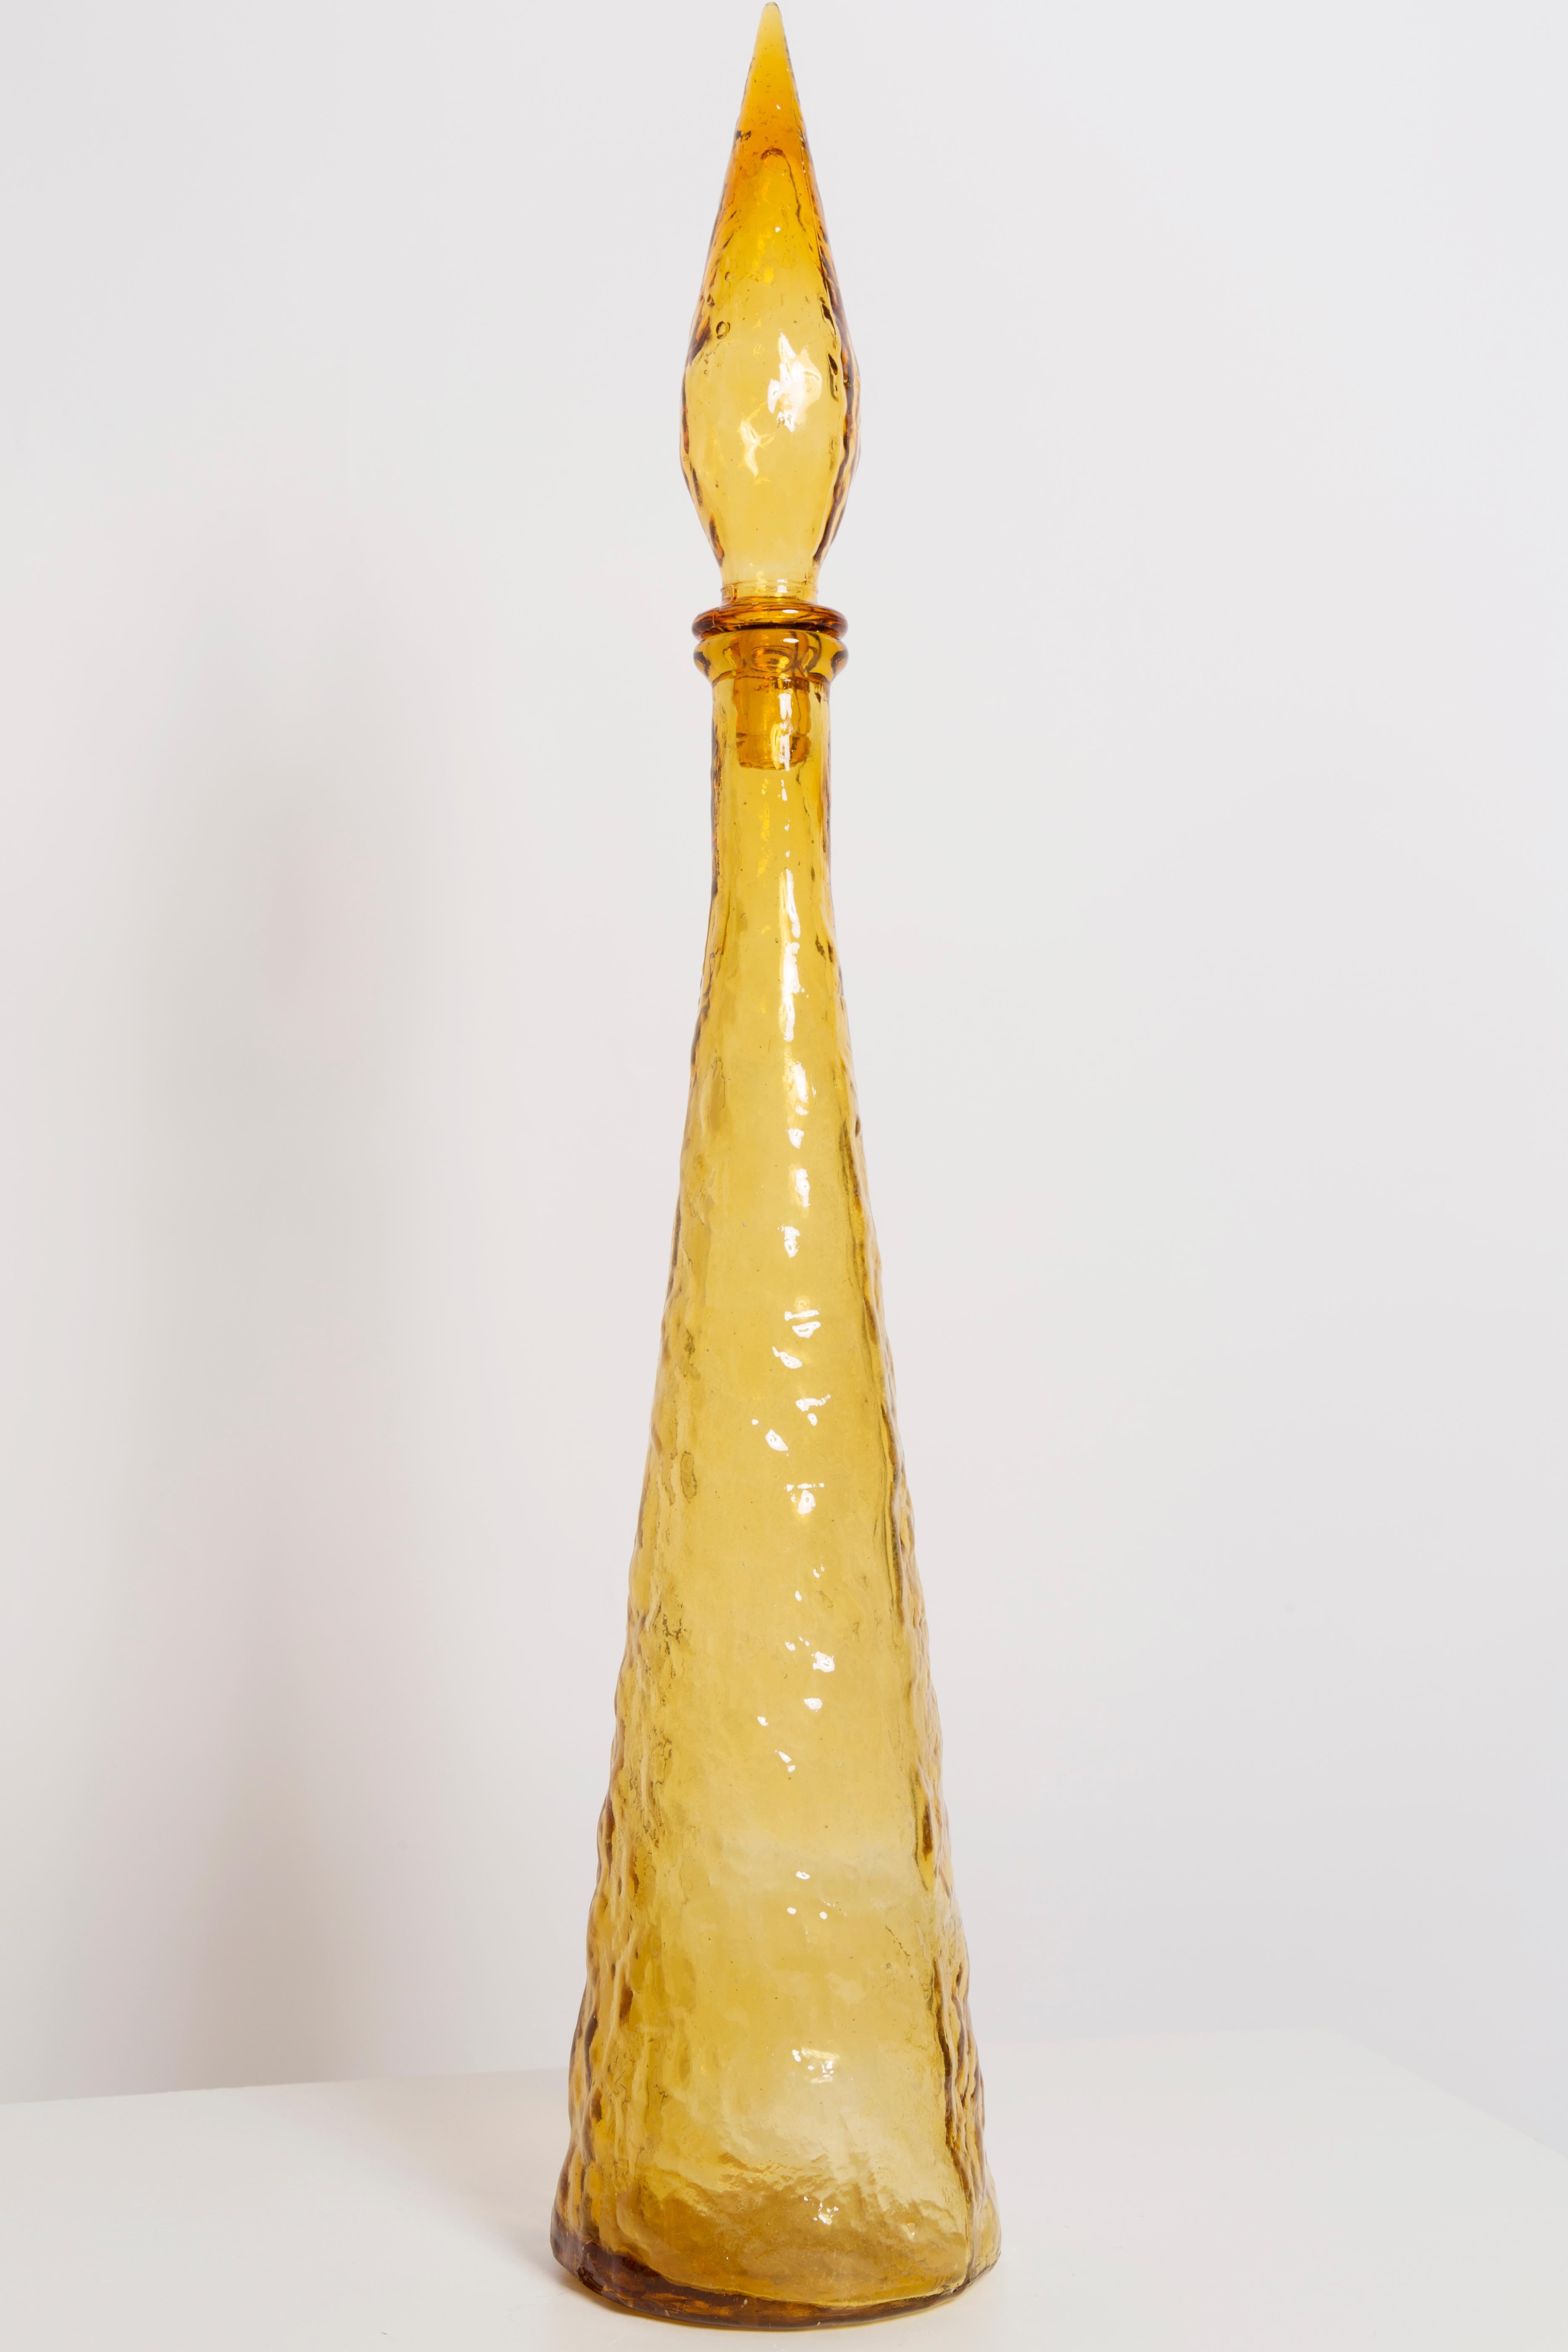 empoli glass genie bottle